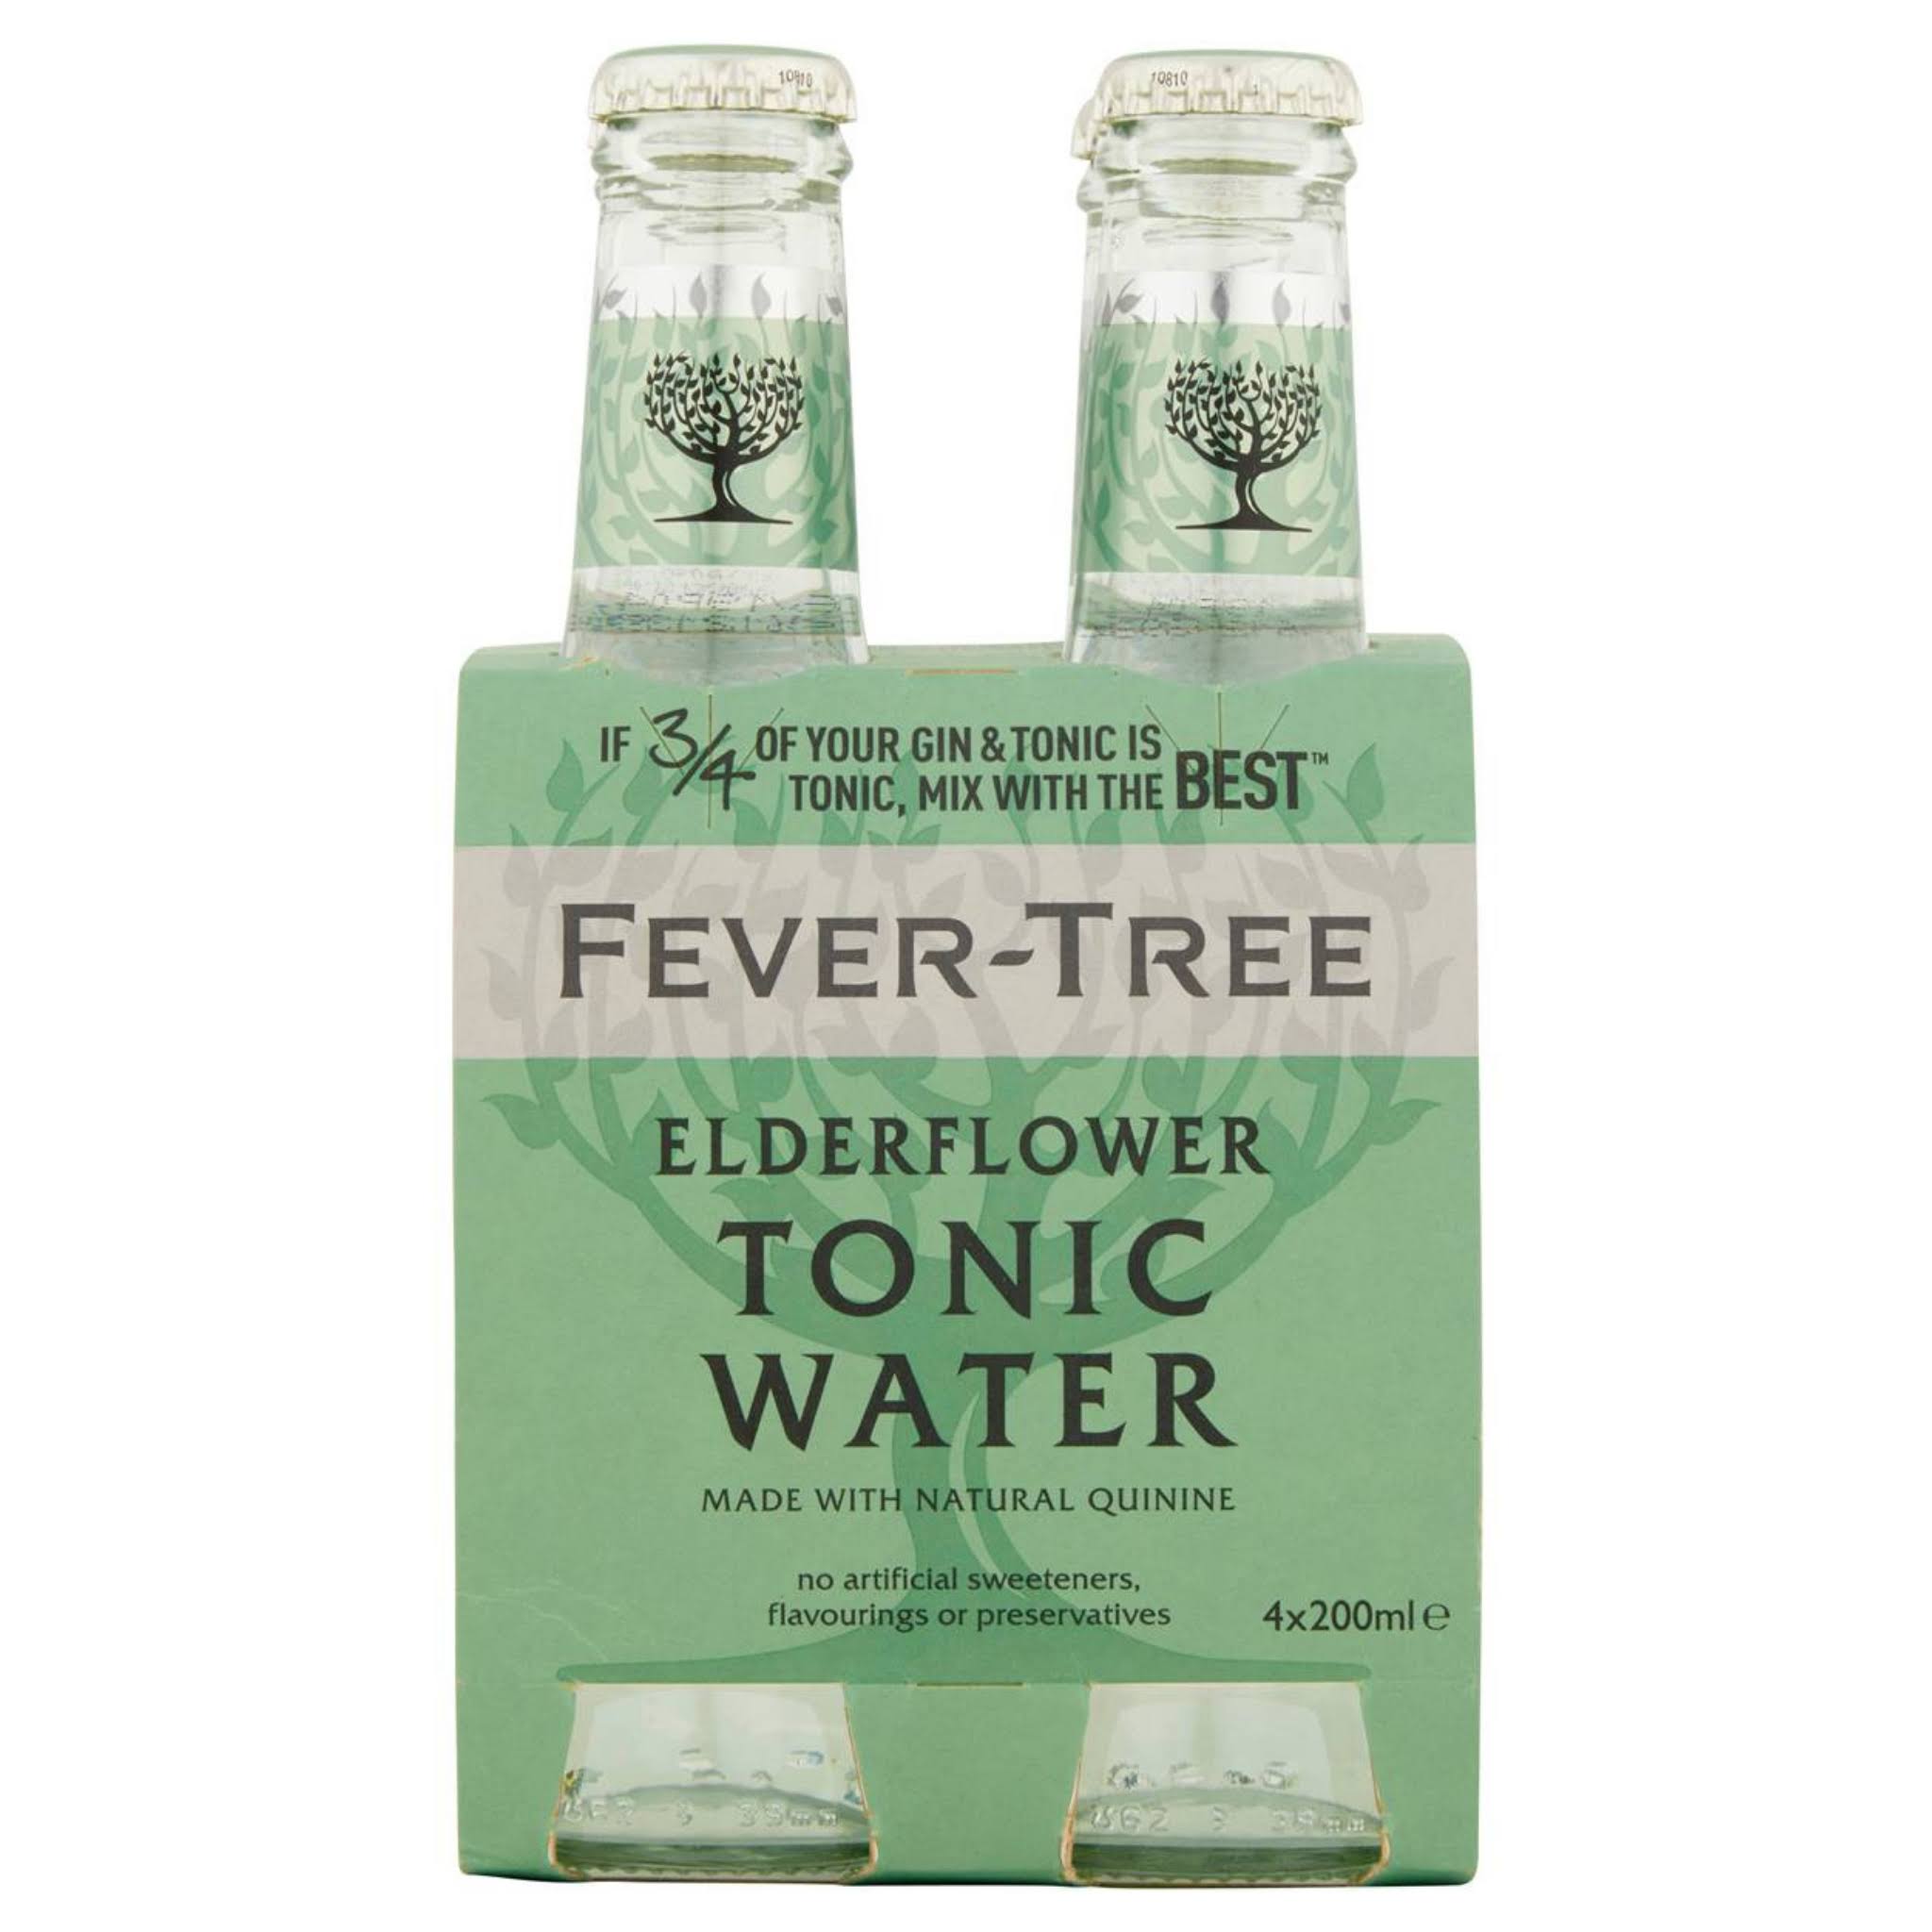 Fever Tree Elderflower Tonic Water Pack - 4pk, 200ml